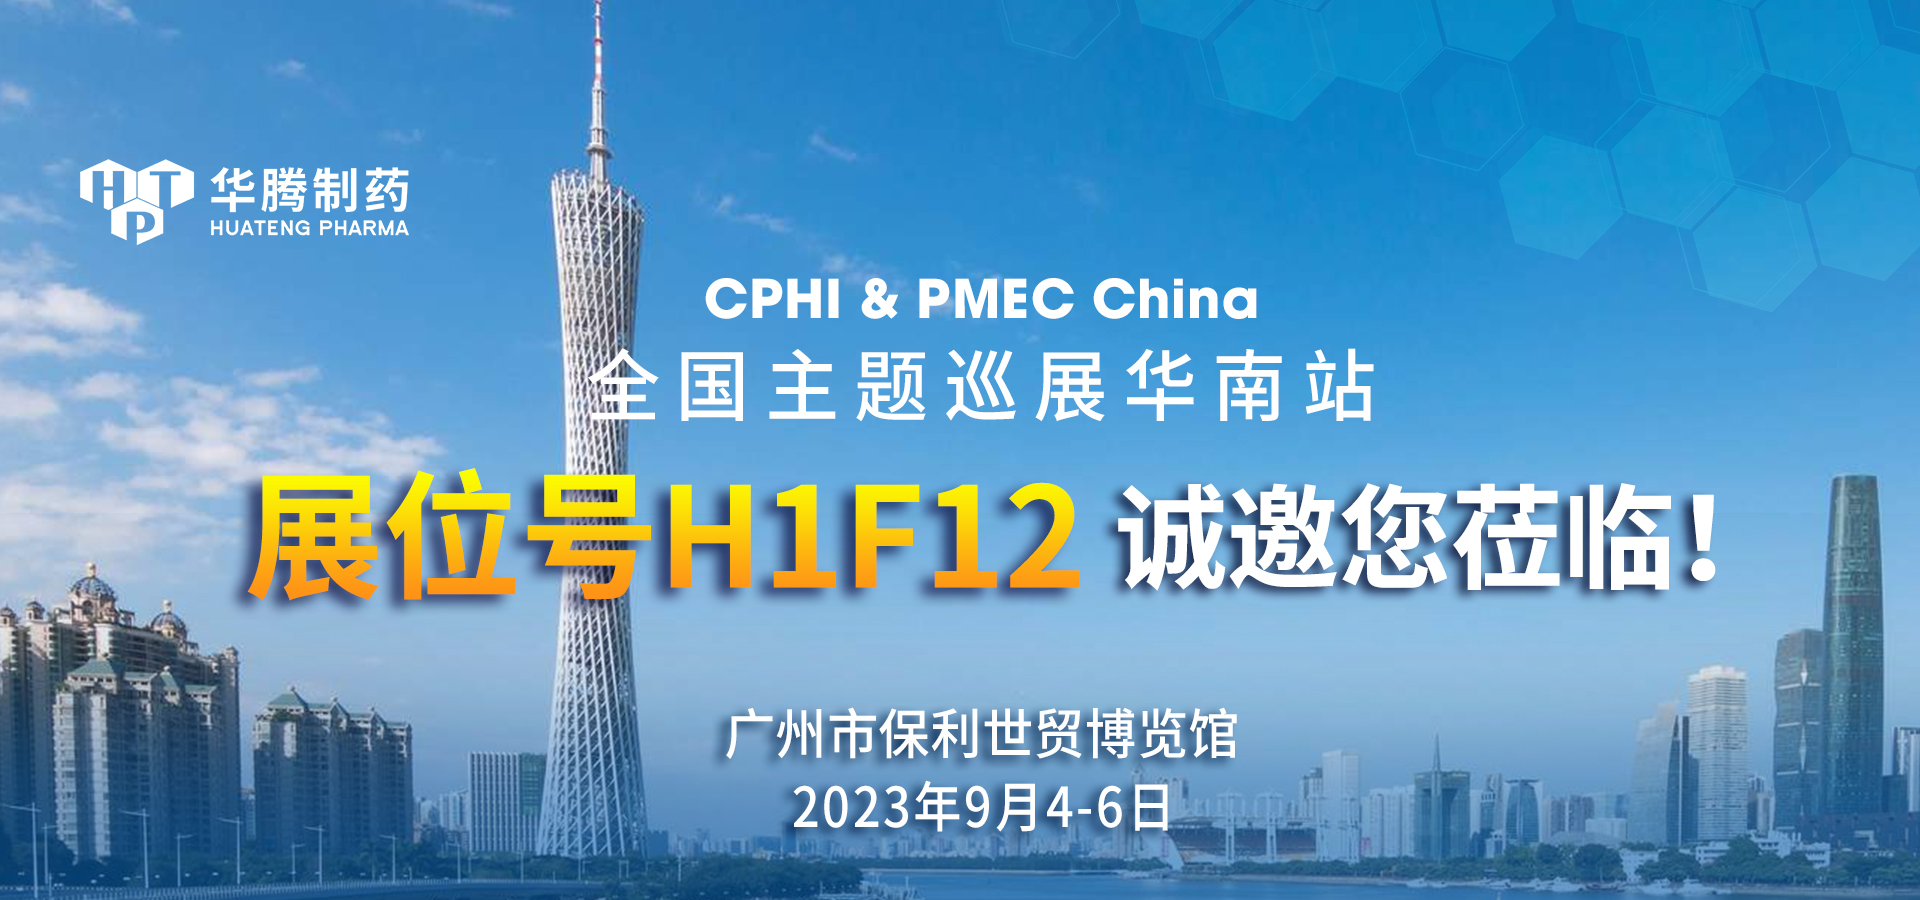 【展会邀约】华腾制药与您相约CPHI & PMEC China全国主题巡展华南站